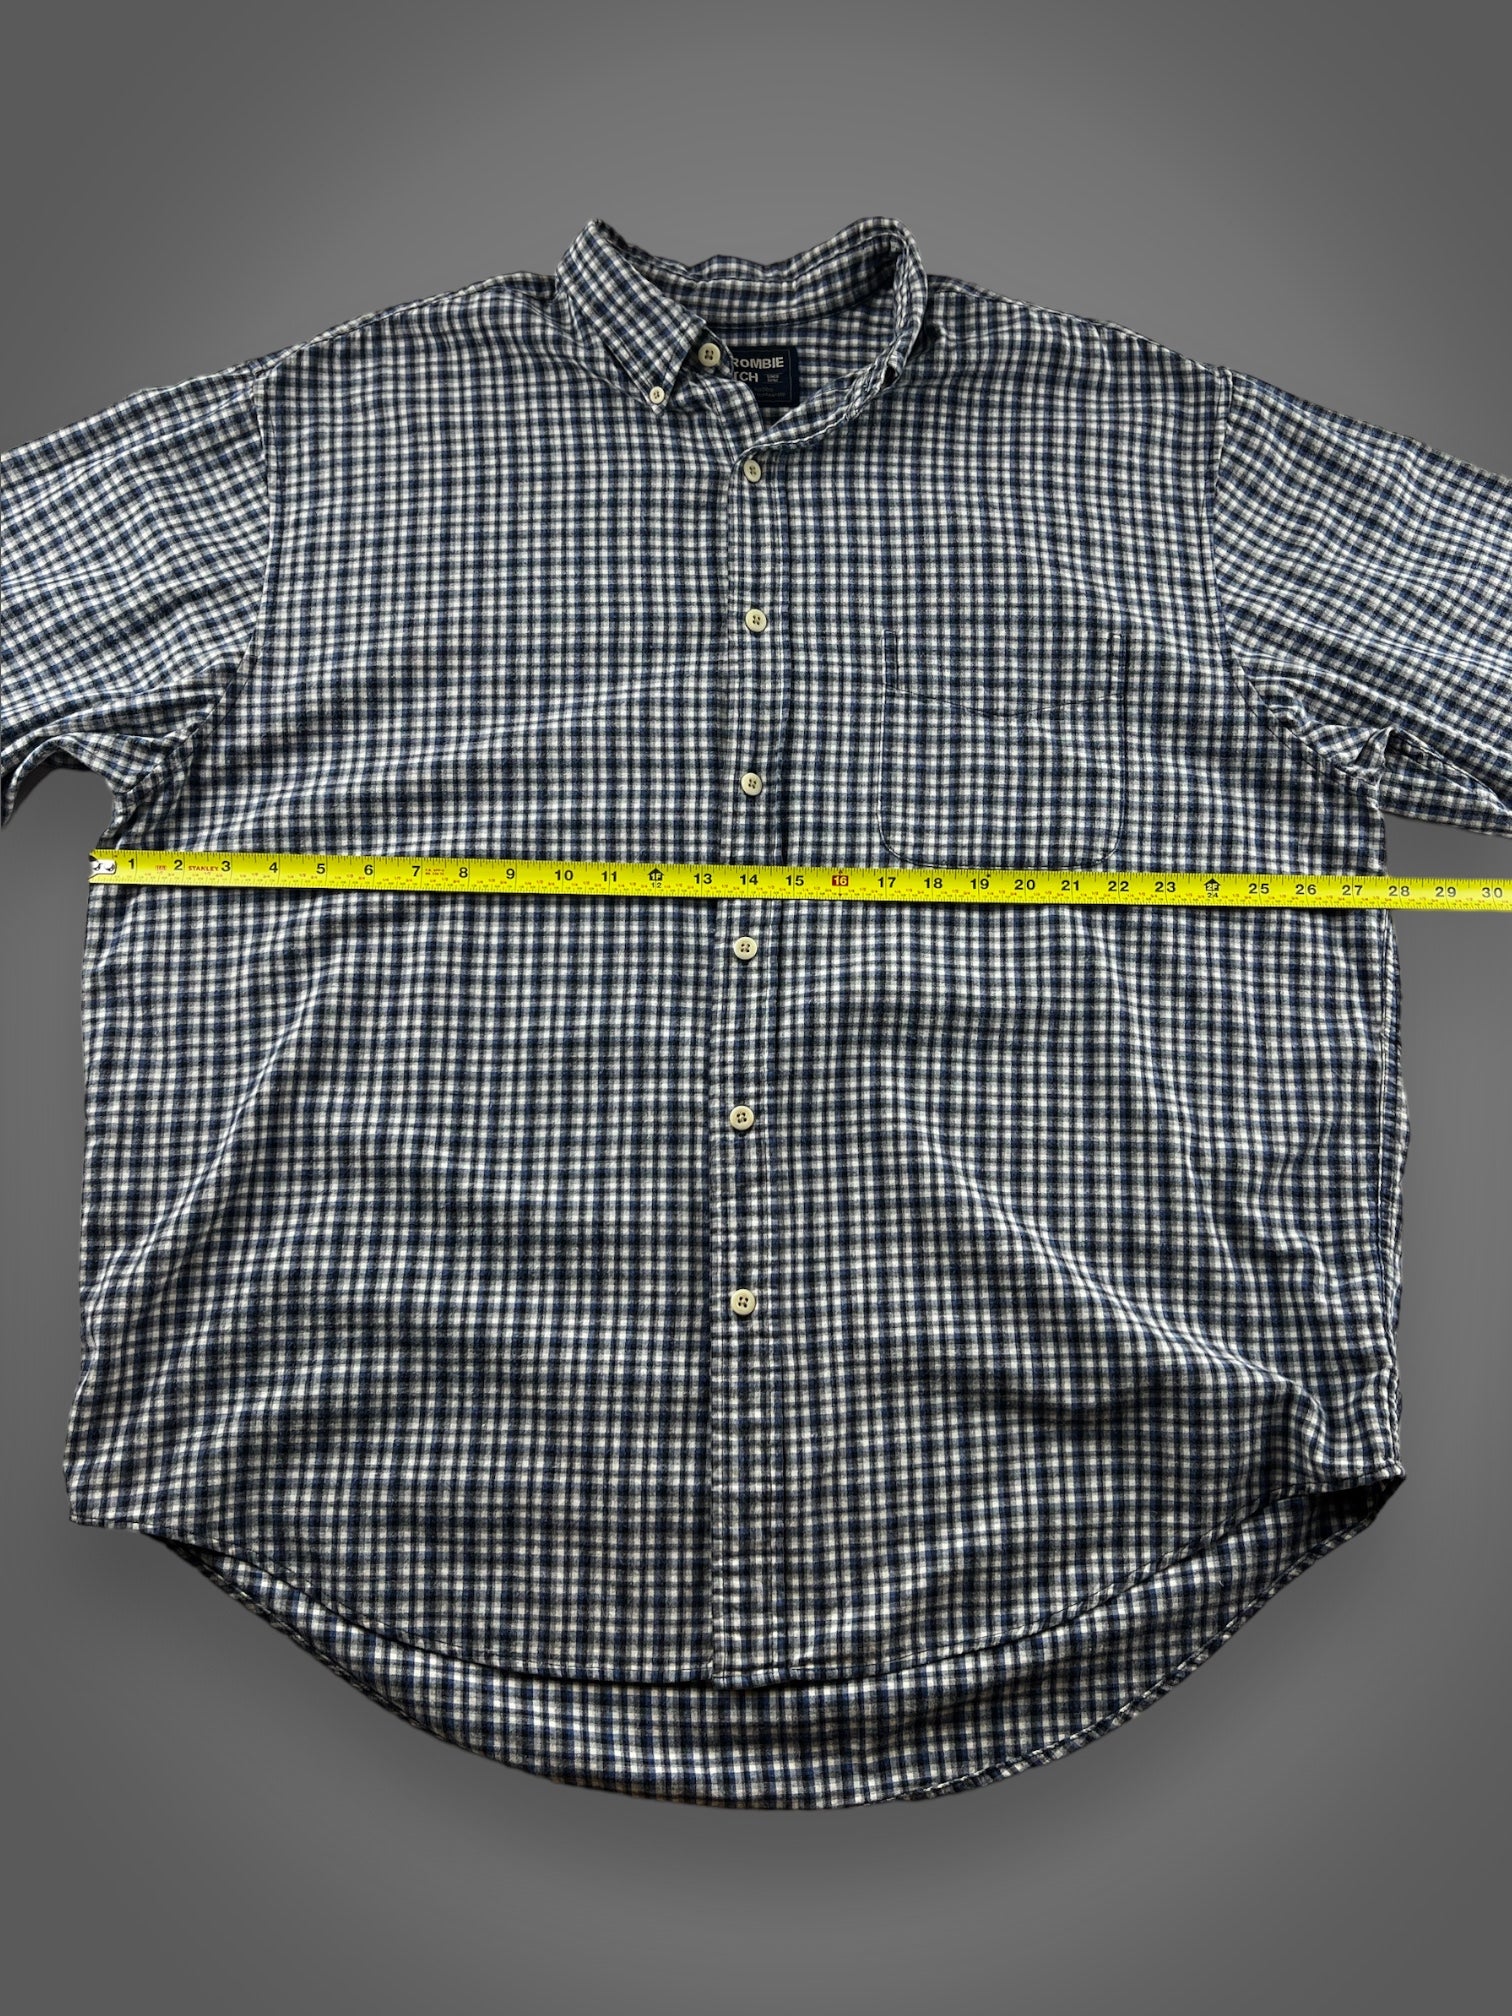 00s Abercrombie plaid flannel button down shirt XXL